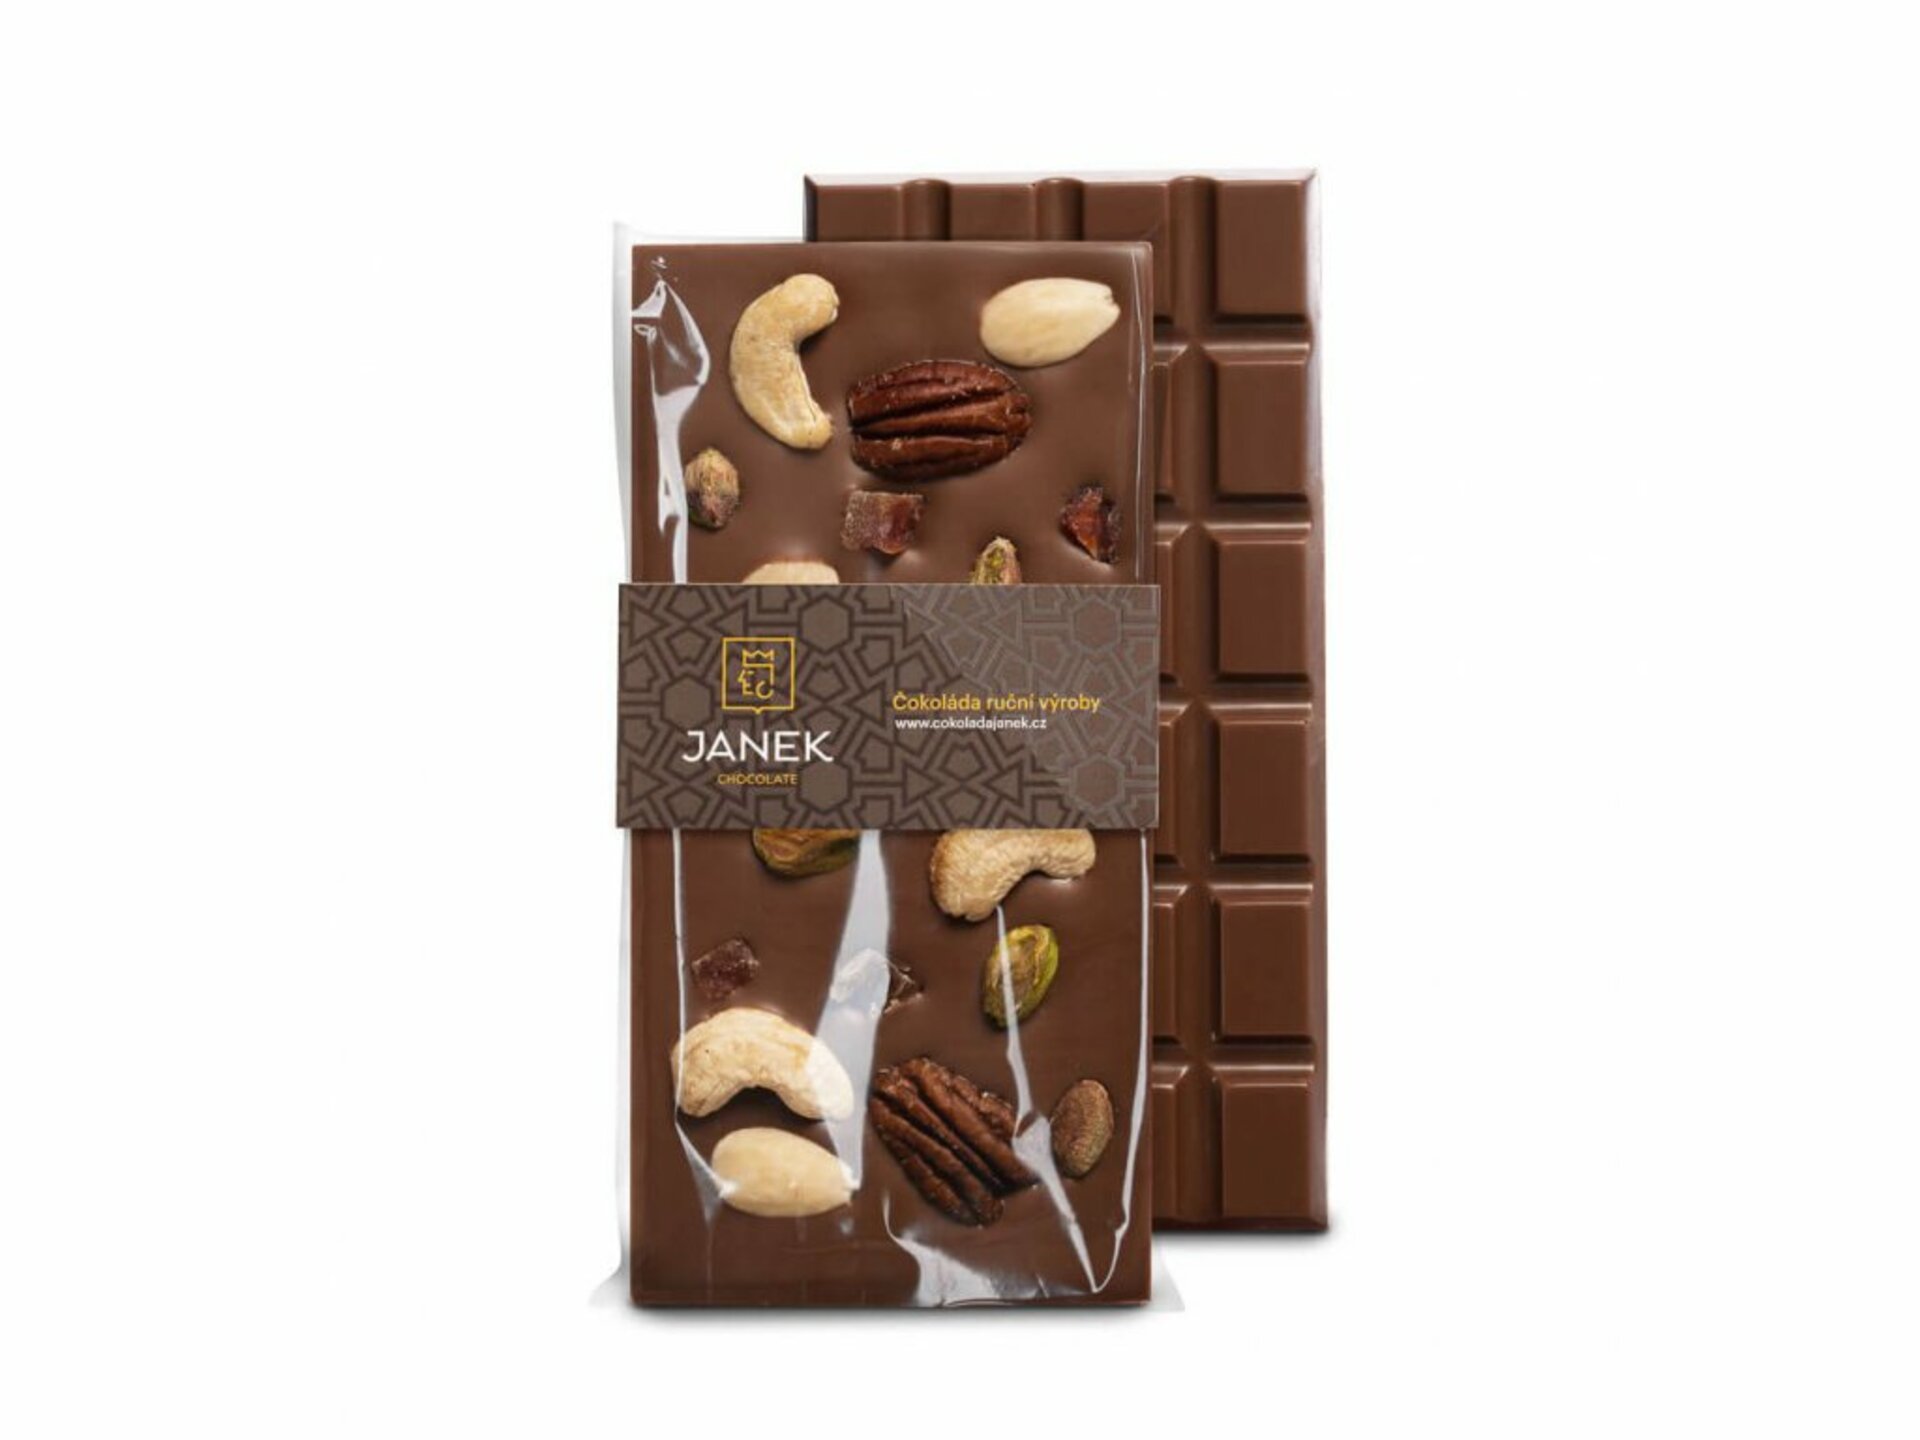 Čokoládovna Janek Mléčná čokoláda "Jankova pečeť" 95 g